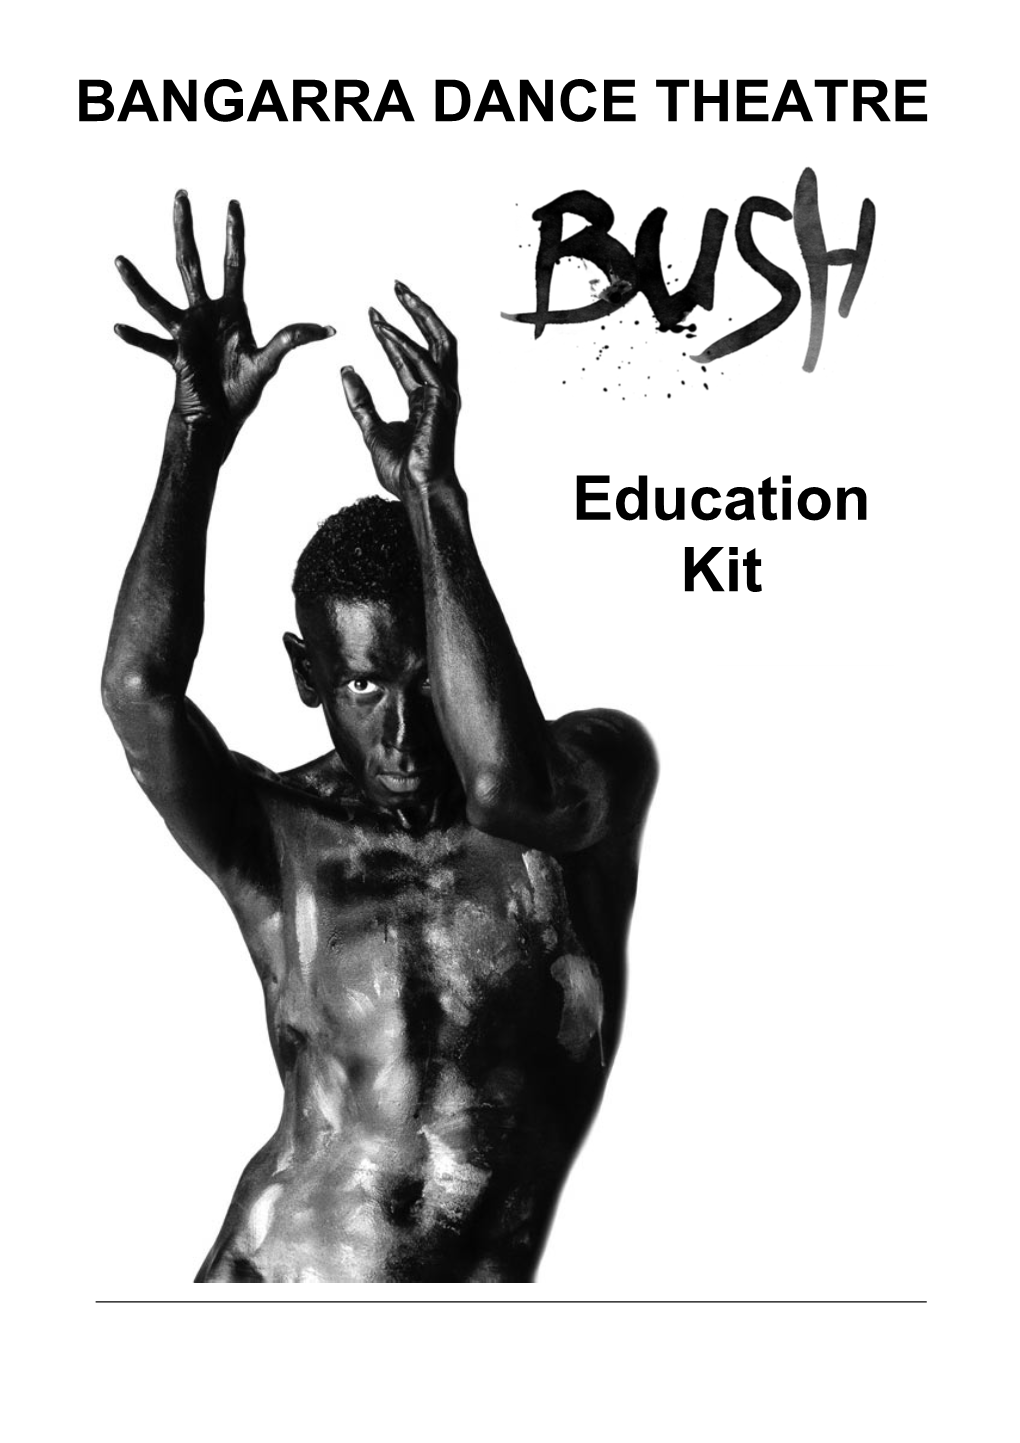 Education Kit